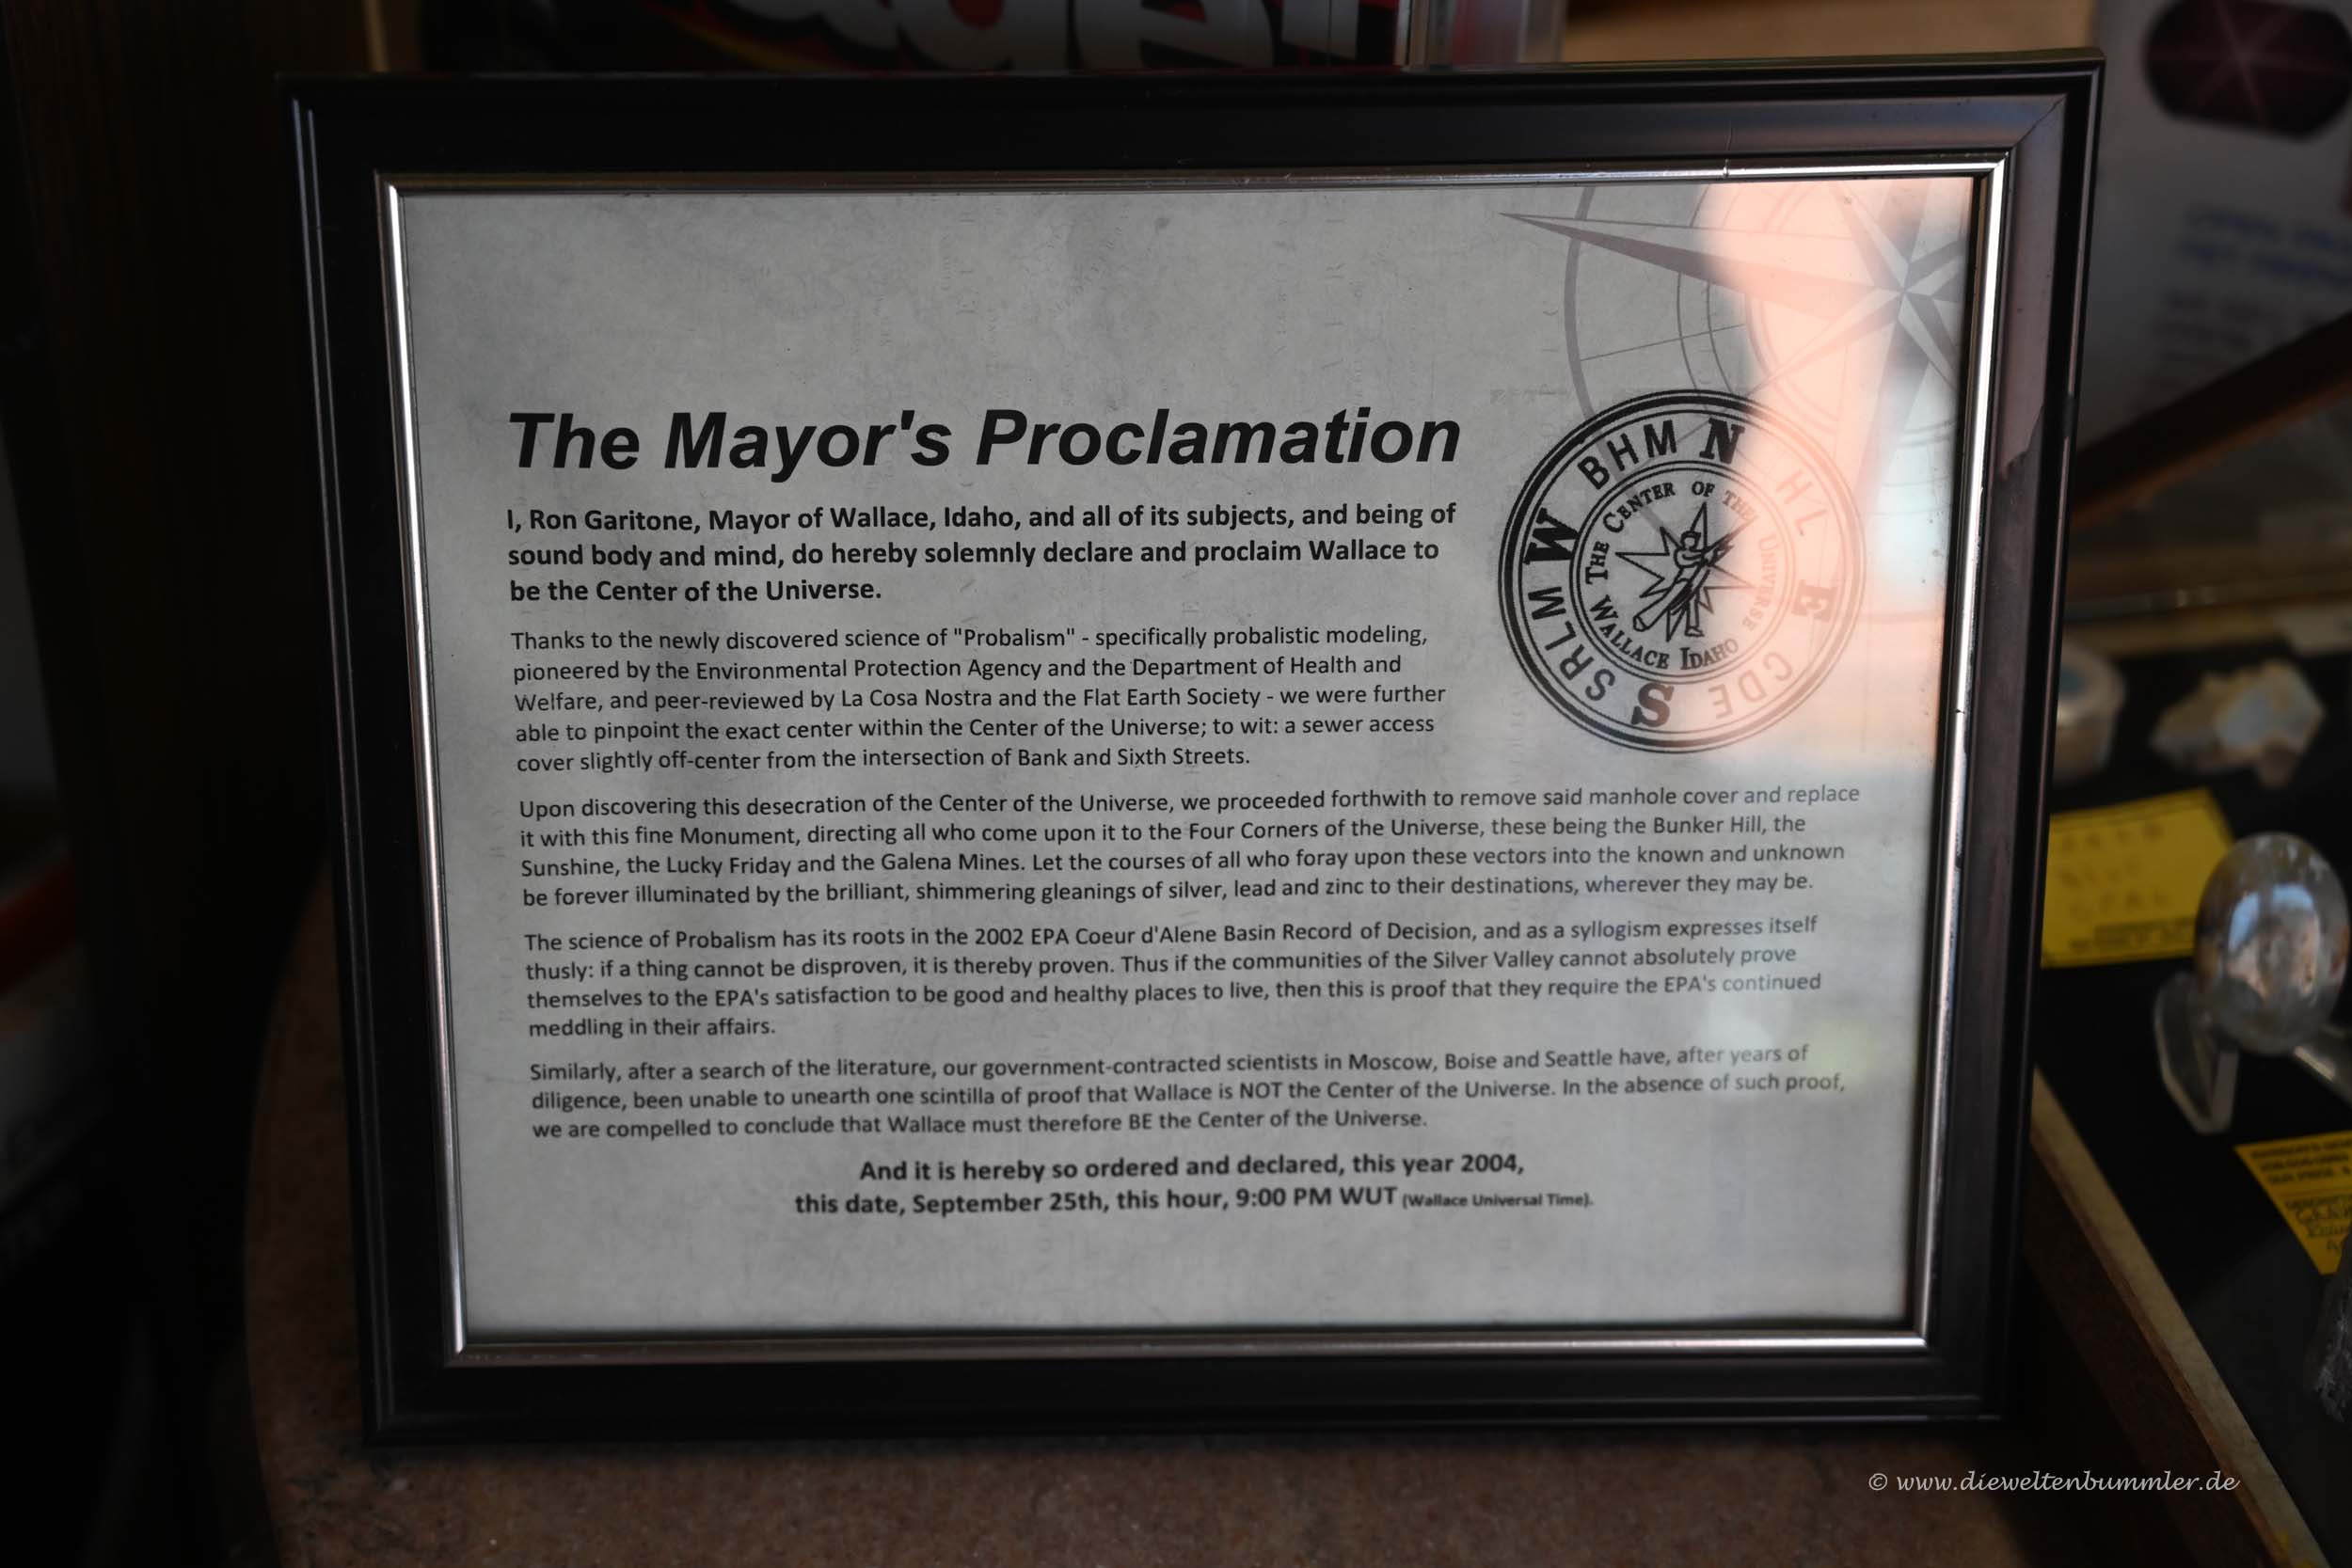 Proklamation des Bürgermeisters von Wallace